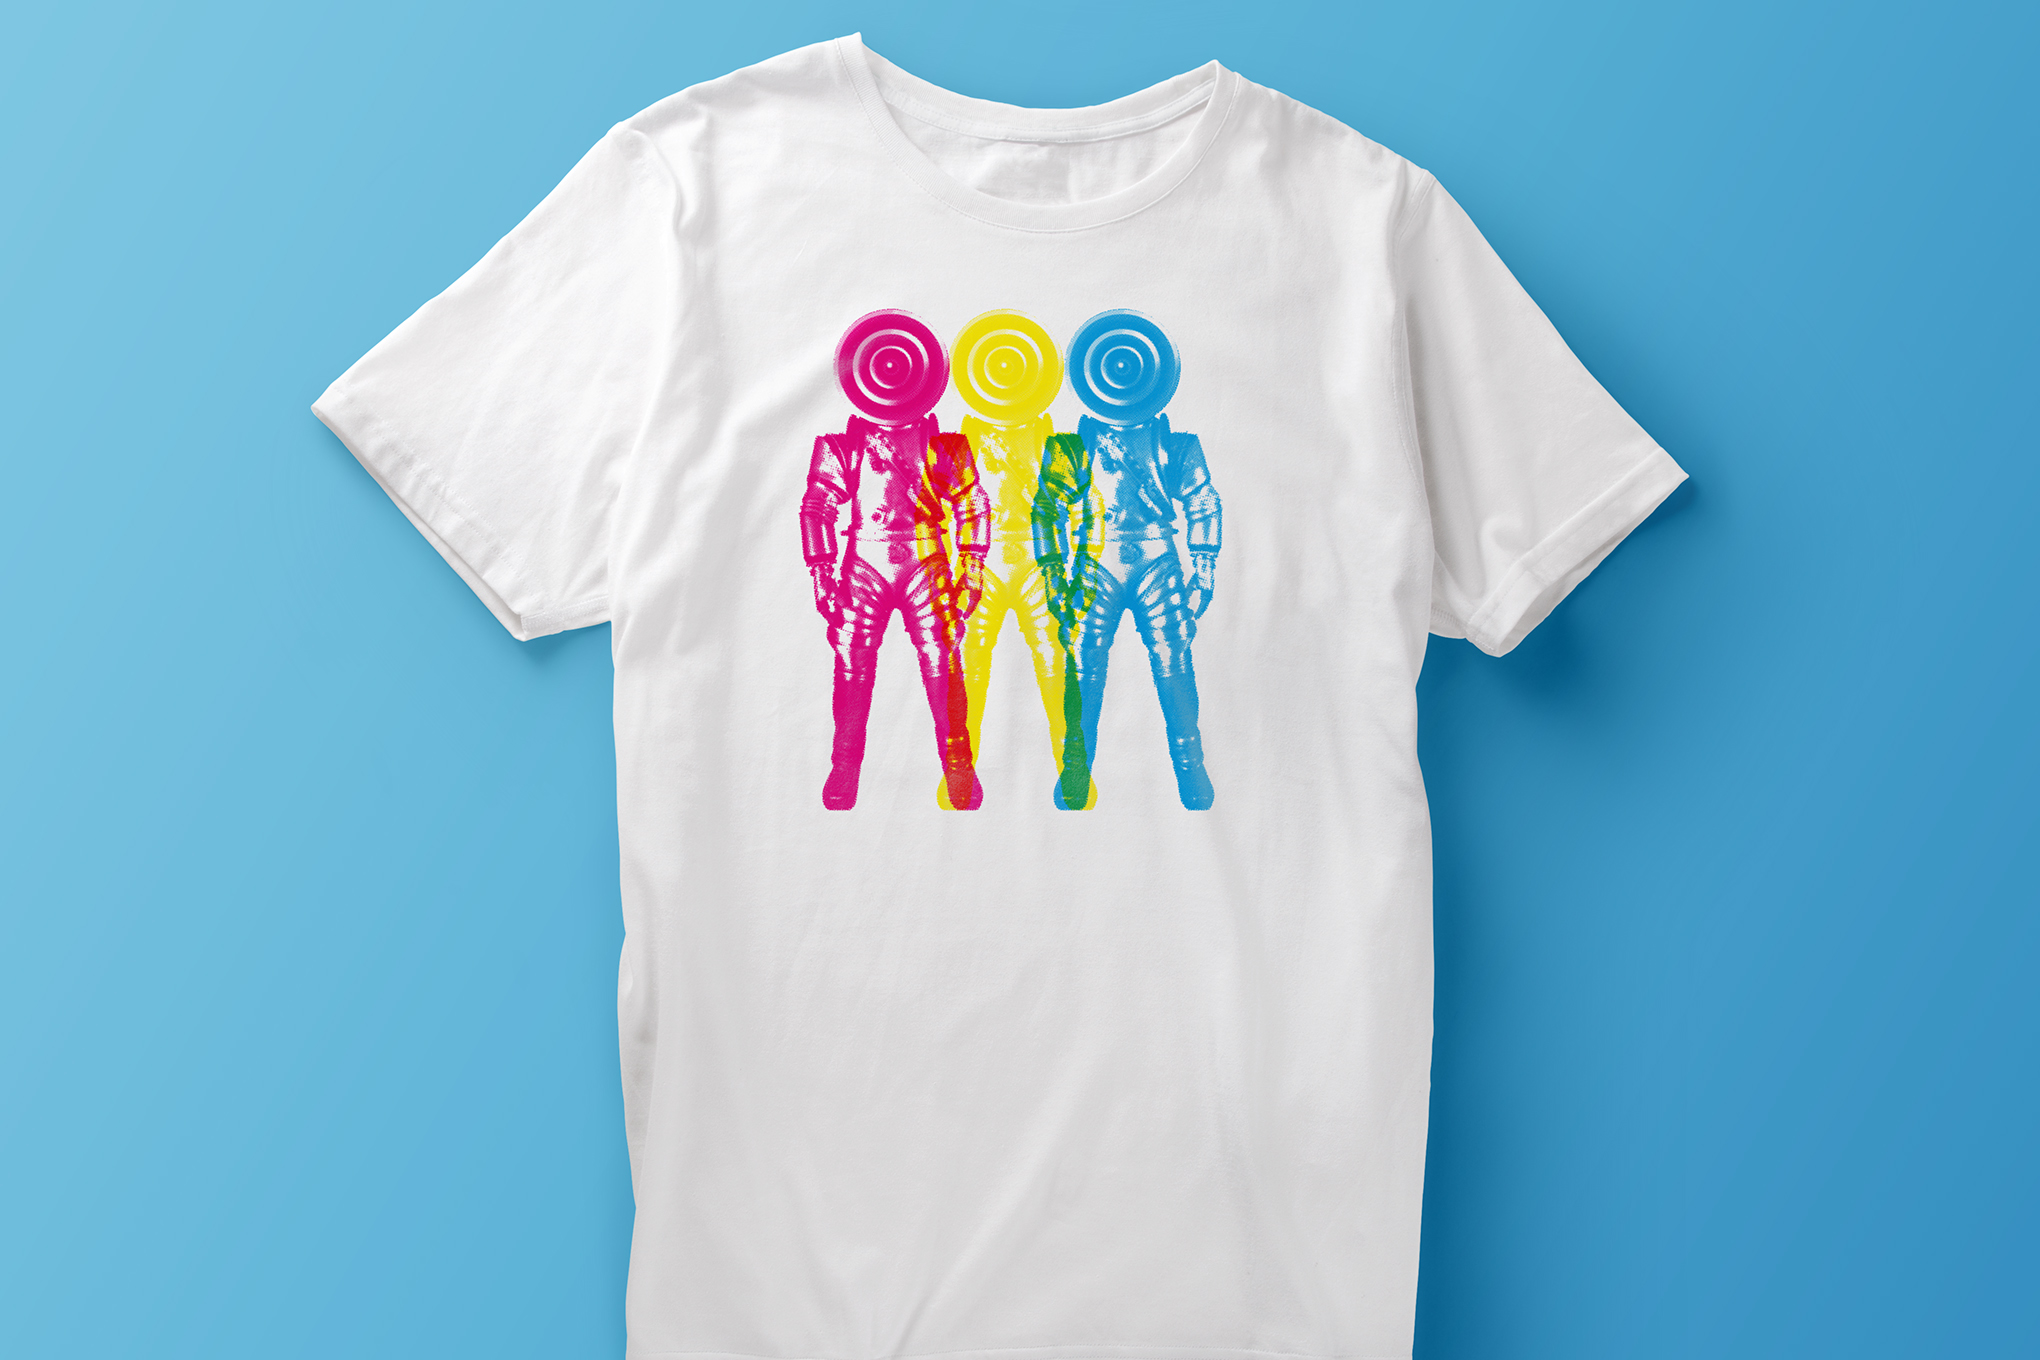 Spacemen 3 T-shirt Design